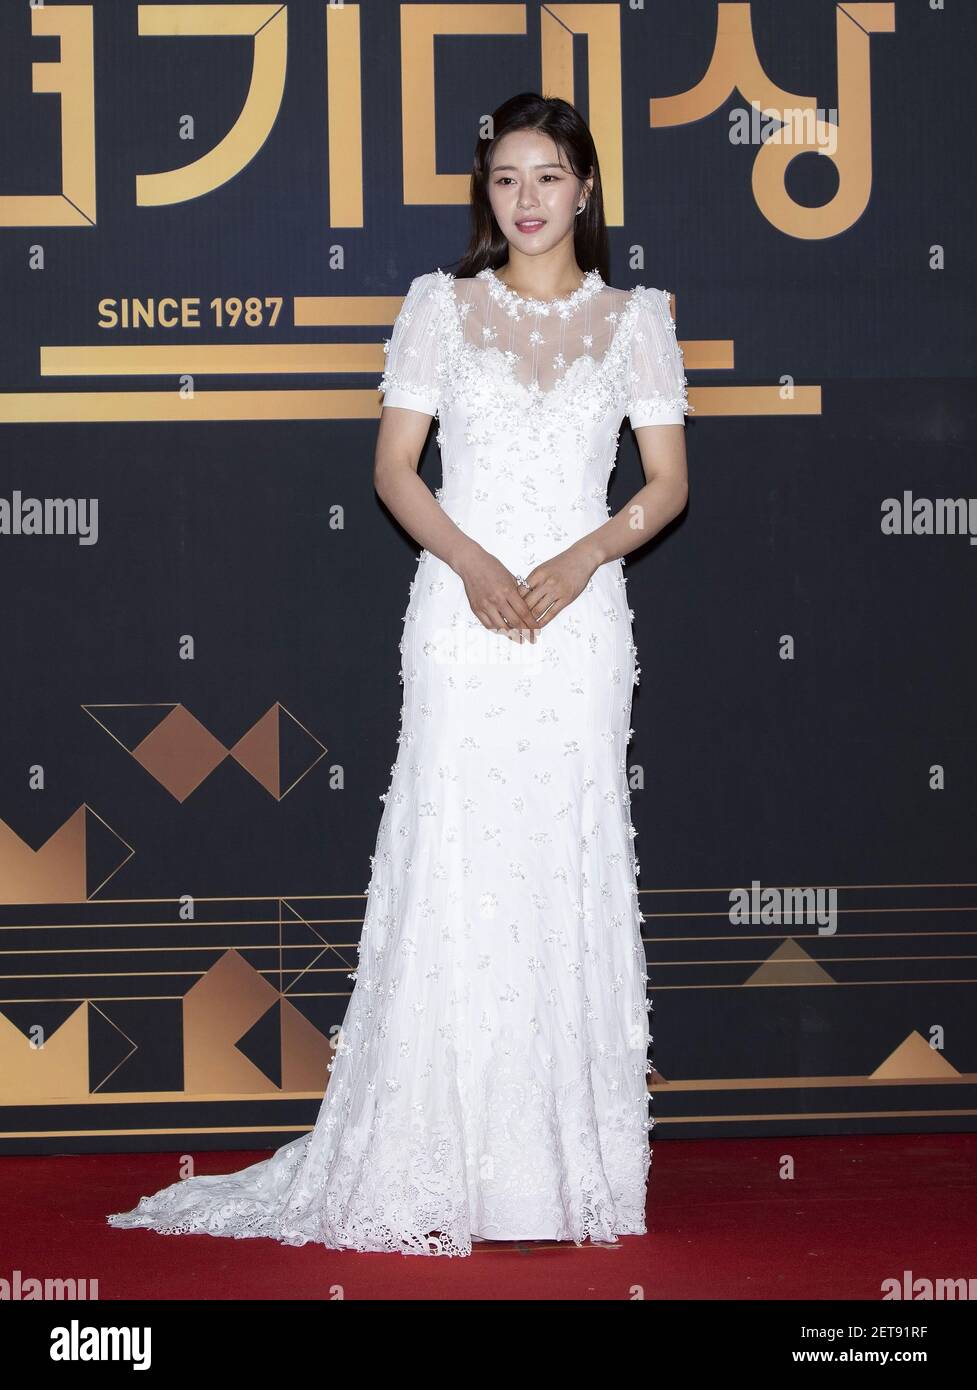 31 de diciembre de 2018 - Seúl, Corea del Sur: La actriz surcoreana Park  ha-na, llegó a la alfombra roja para los premios KBS TV Drama Awards 2018  en el salón KBS